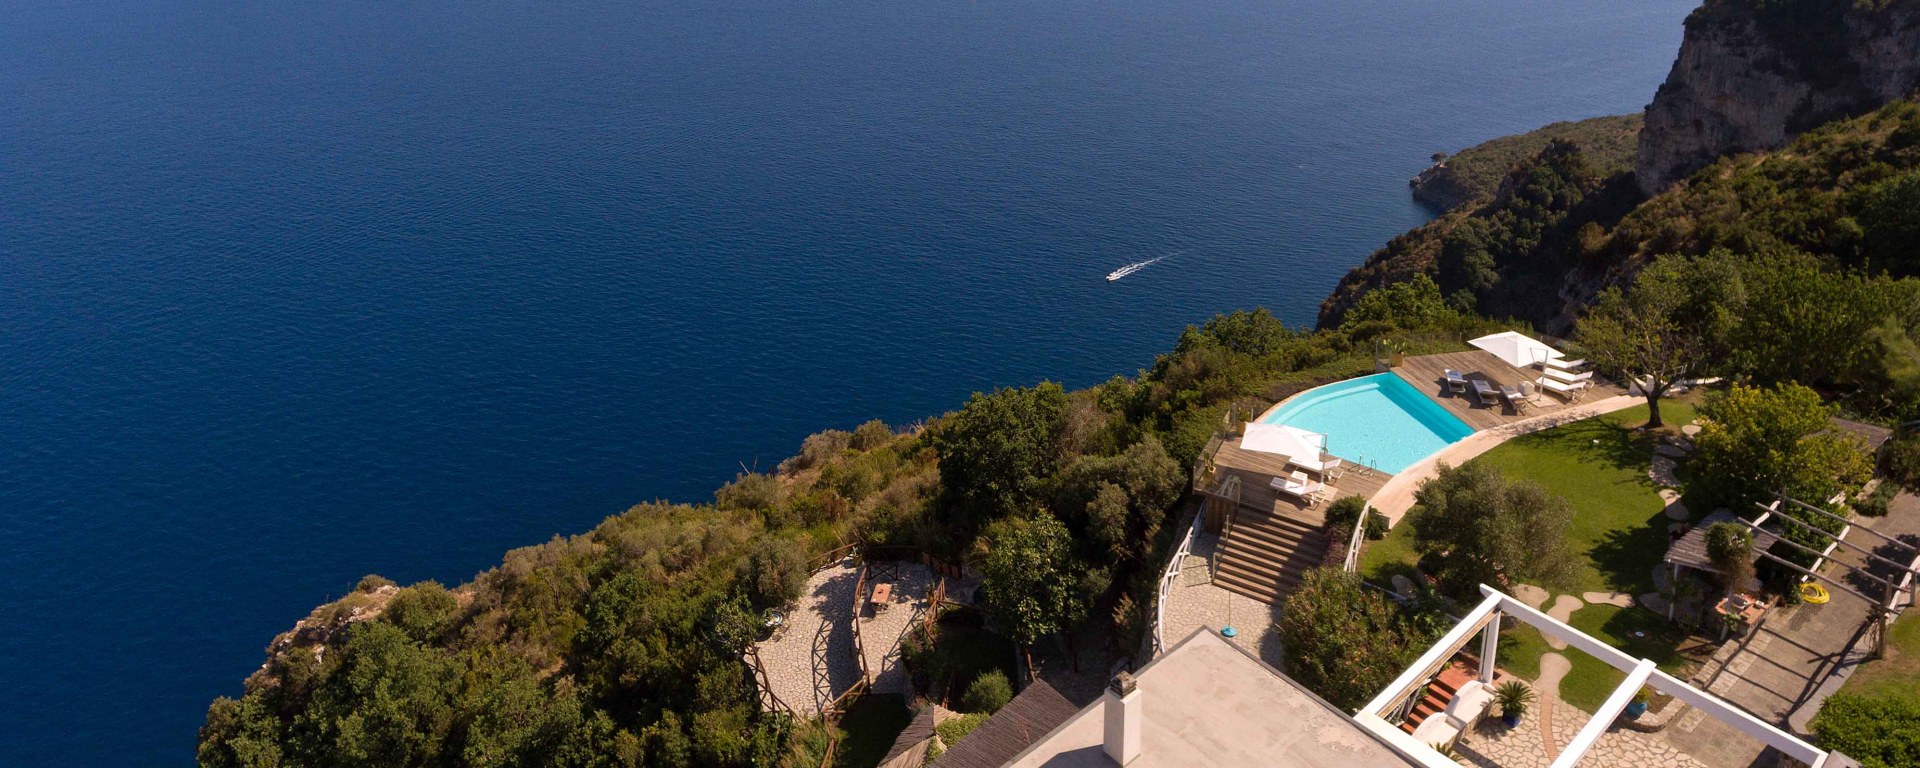 Ferienhaus Amalfiküste Mieten - Amalfi Cliff Villa